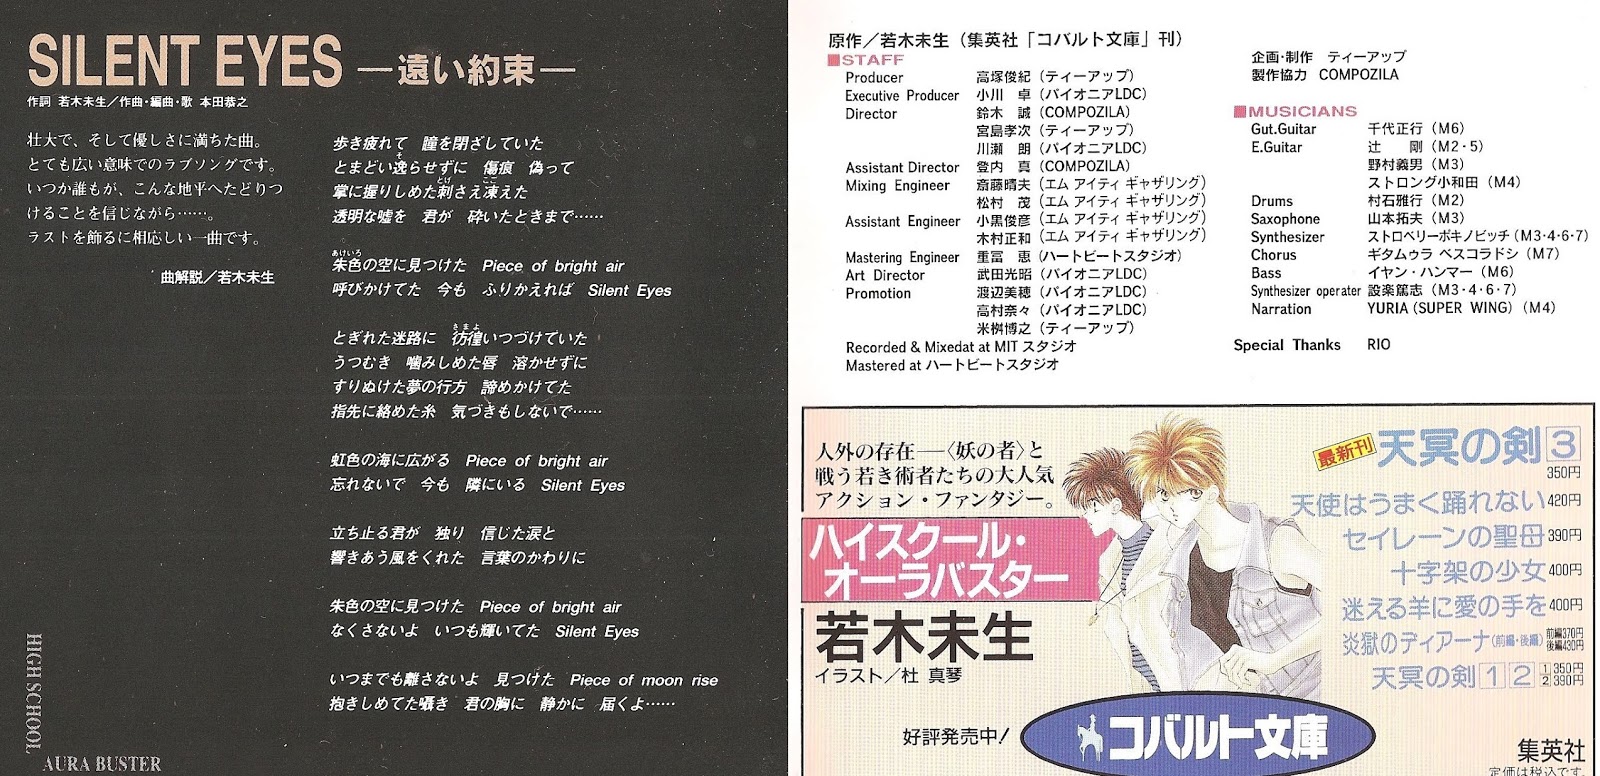 怒りの以下略 本田恭之 西村麻聡 他 ハイスクール オーラバスター オリジナルアルバム 1993